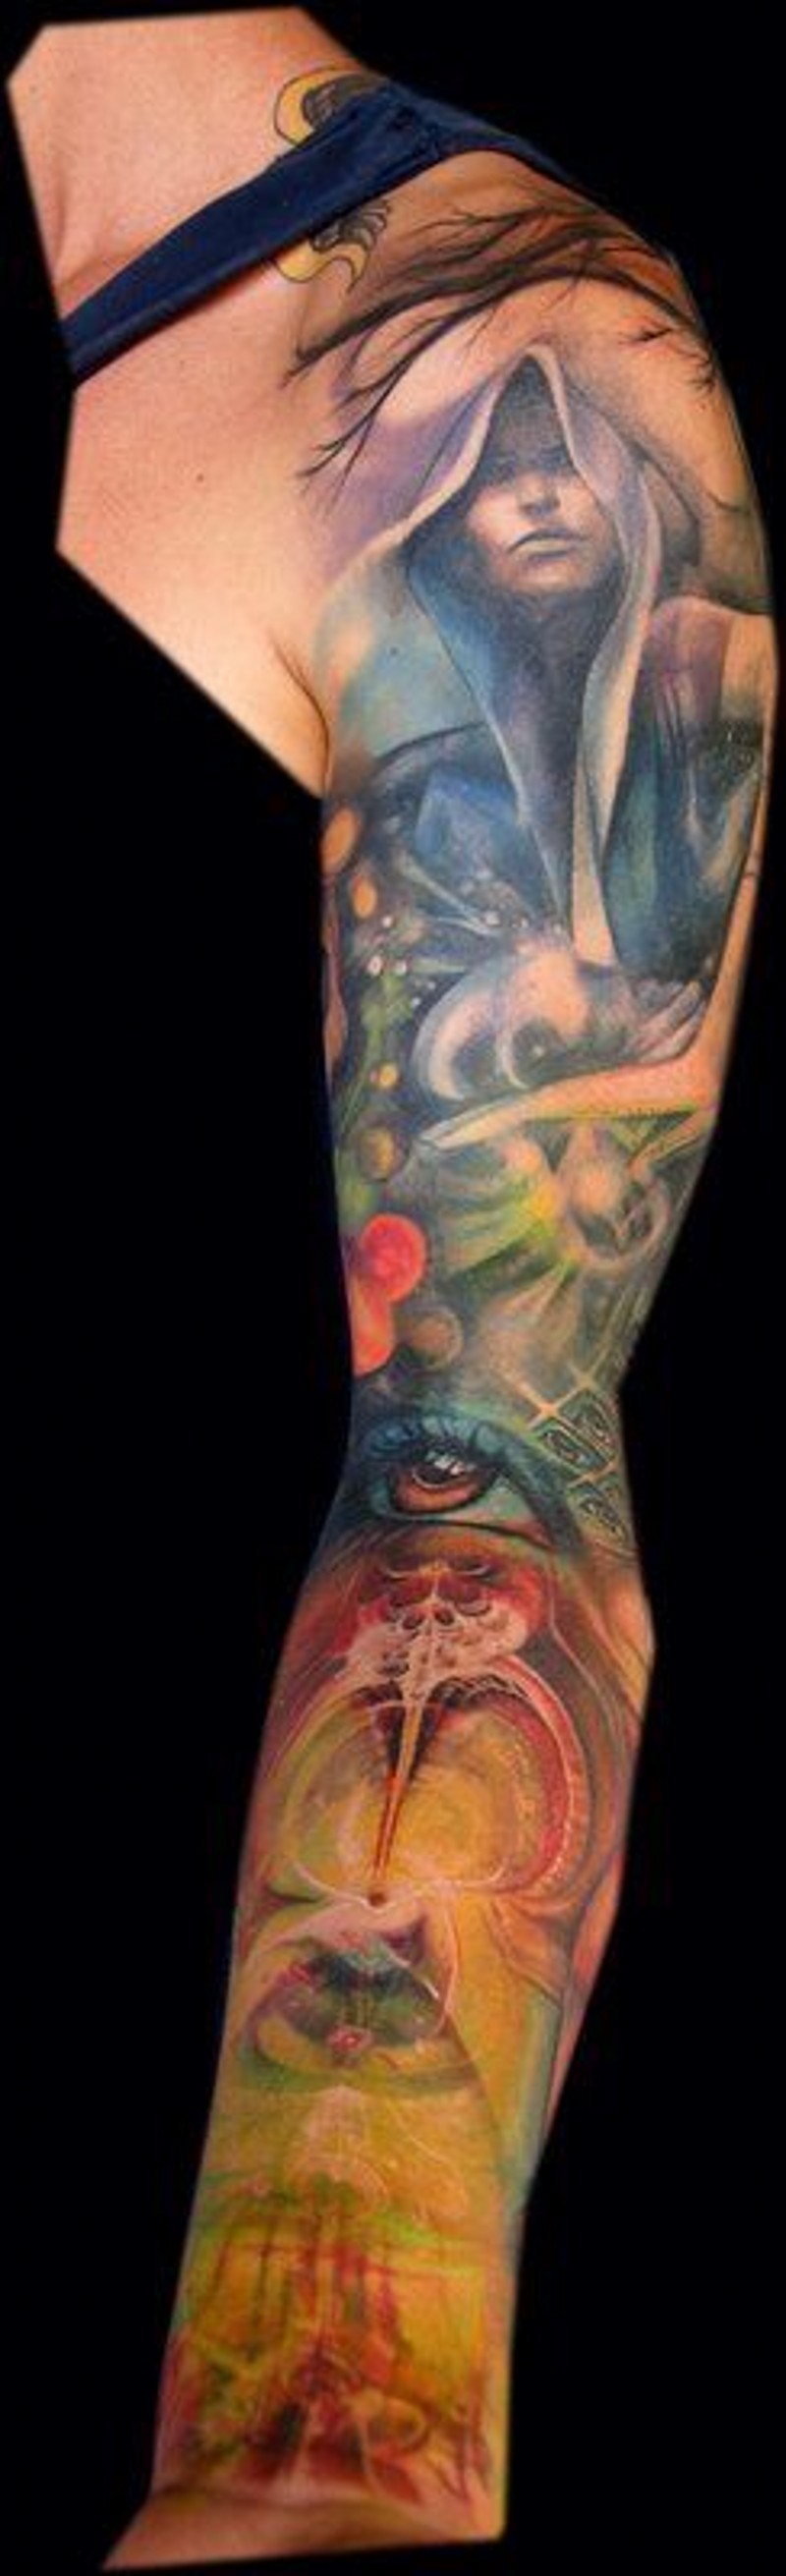 Tatuaje en el brazo completo, bruja en el bosque, diseño fantástico